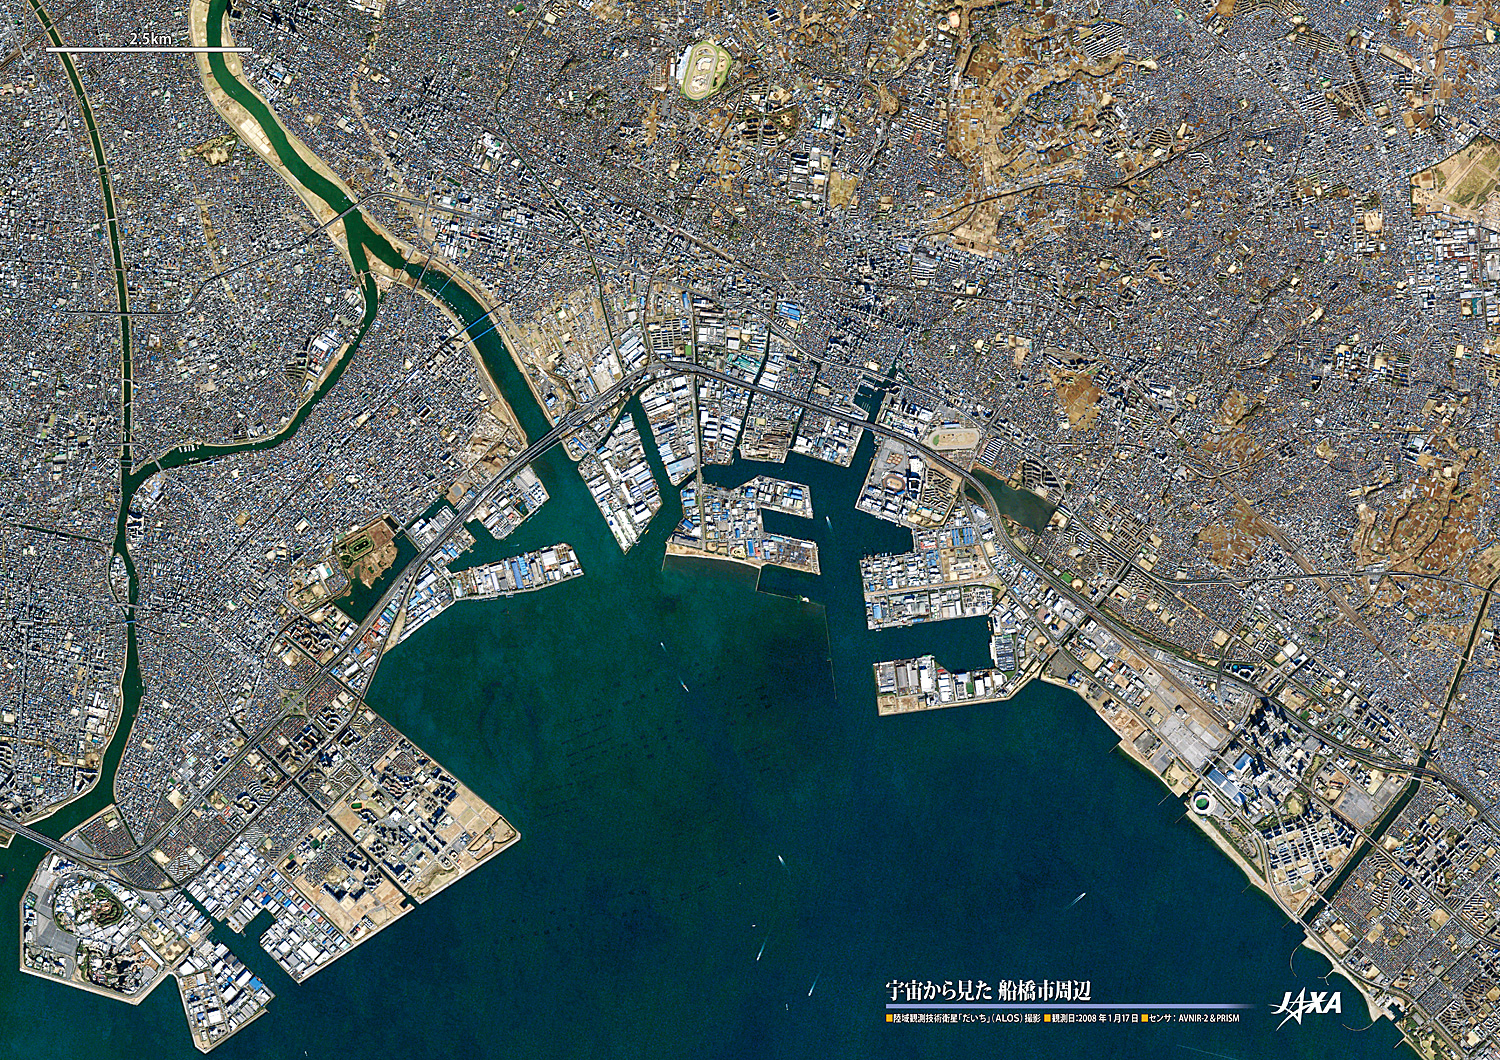 だいちから見た日本の都市 船橋市周辺:衛星画像（ポスター仕上げ）